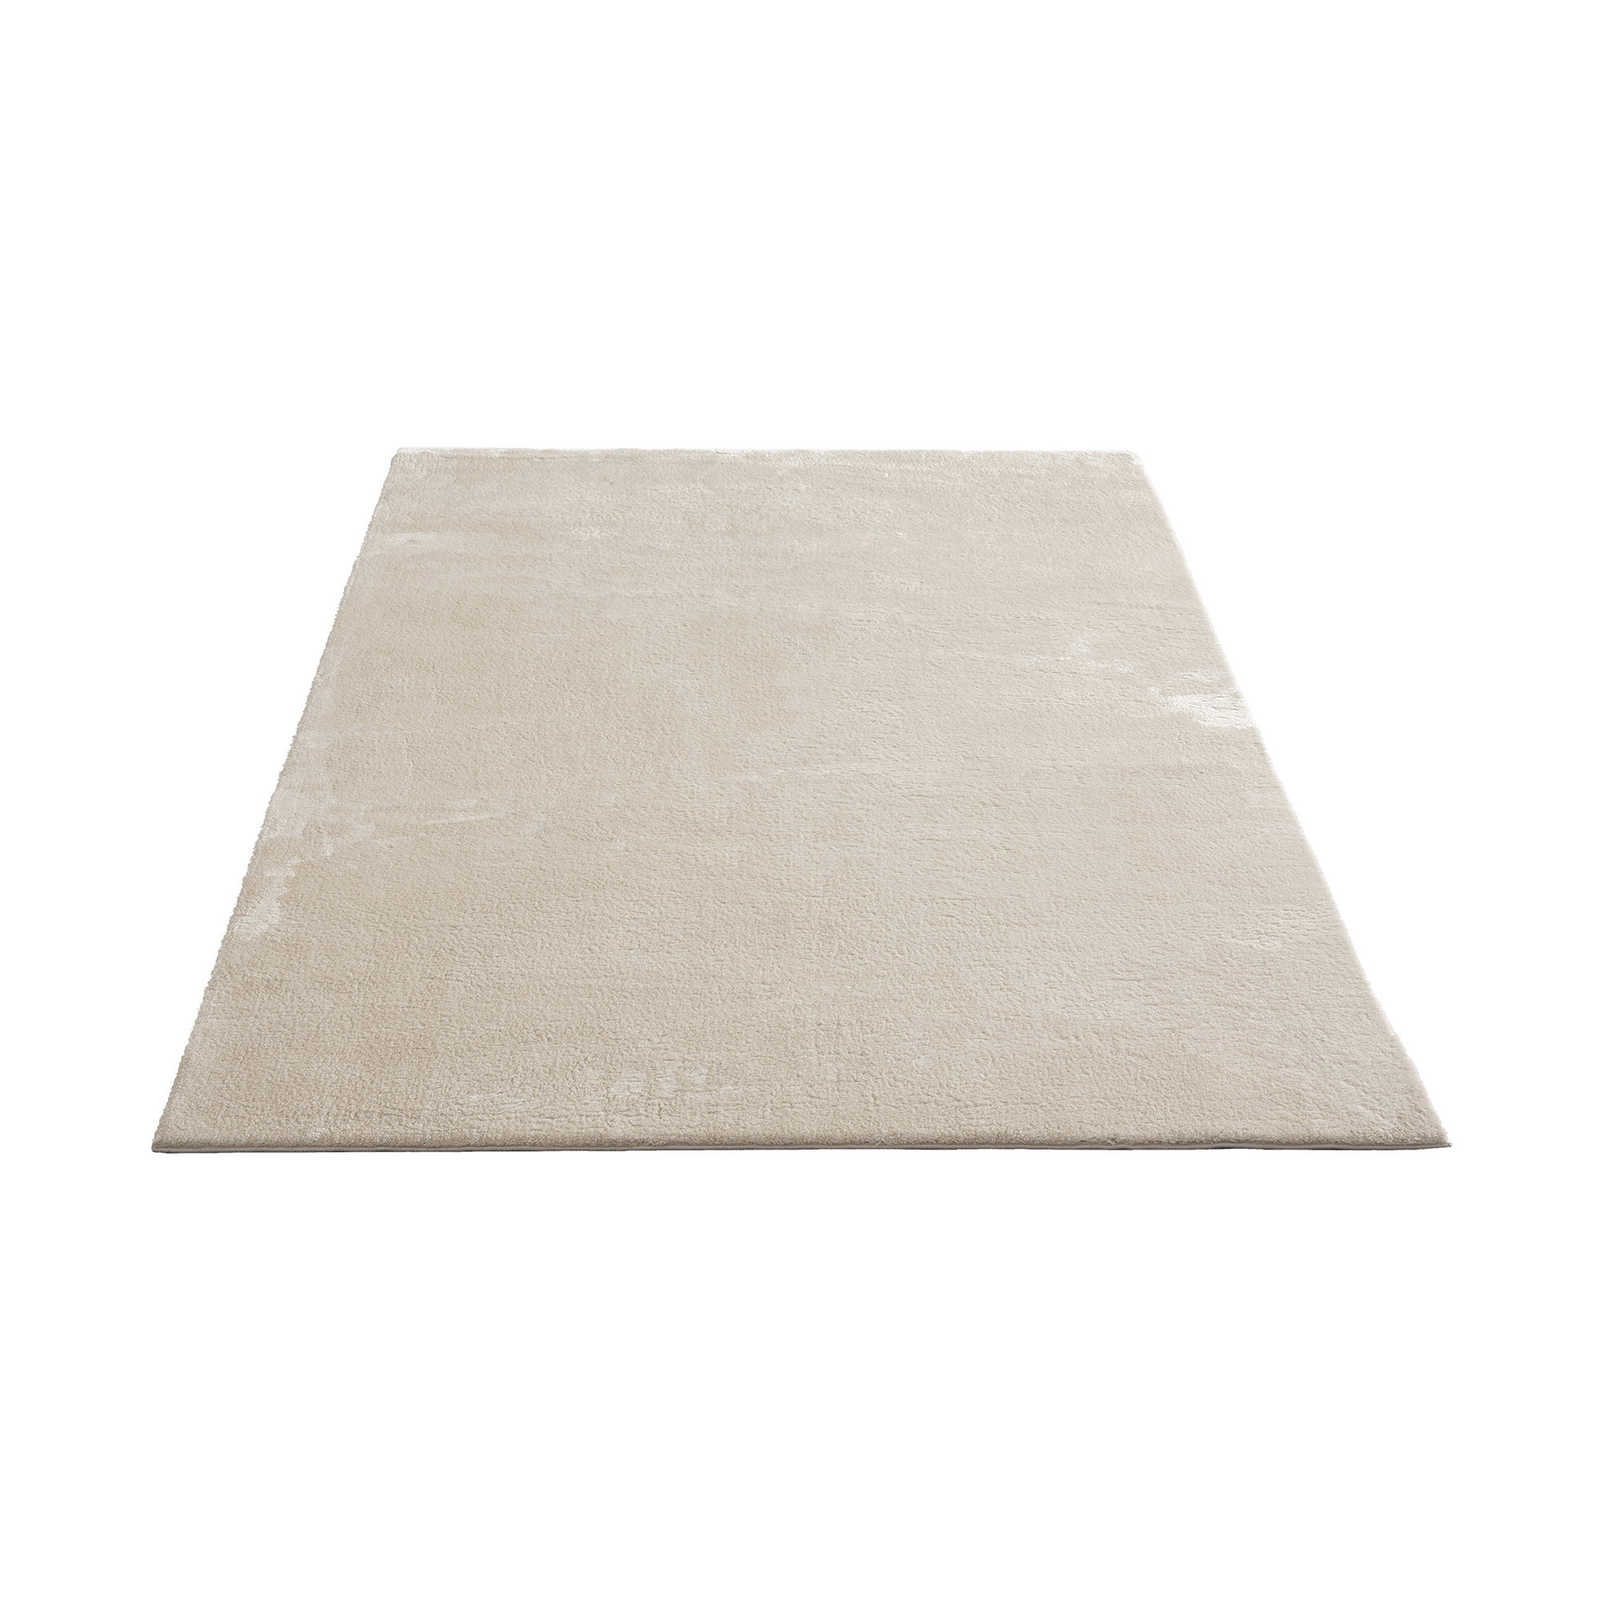 Soft high pile carpet in beige - 290 x 200 cm
